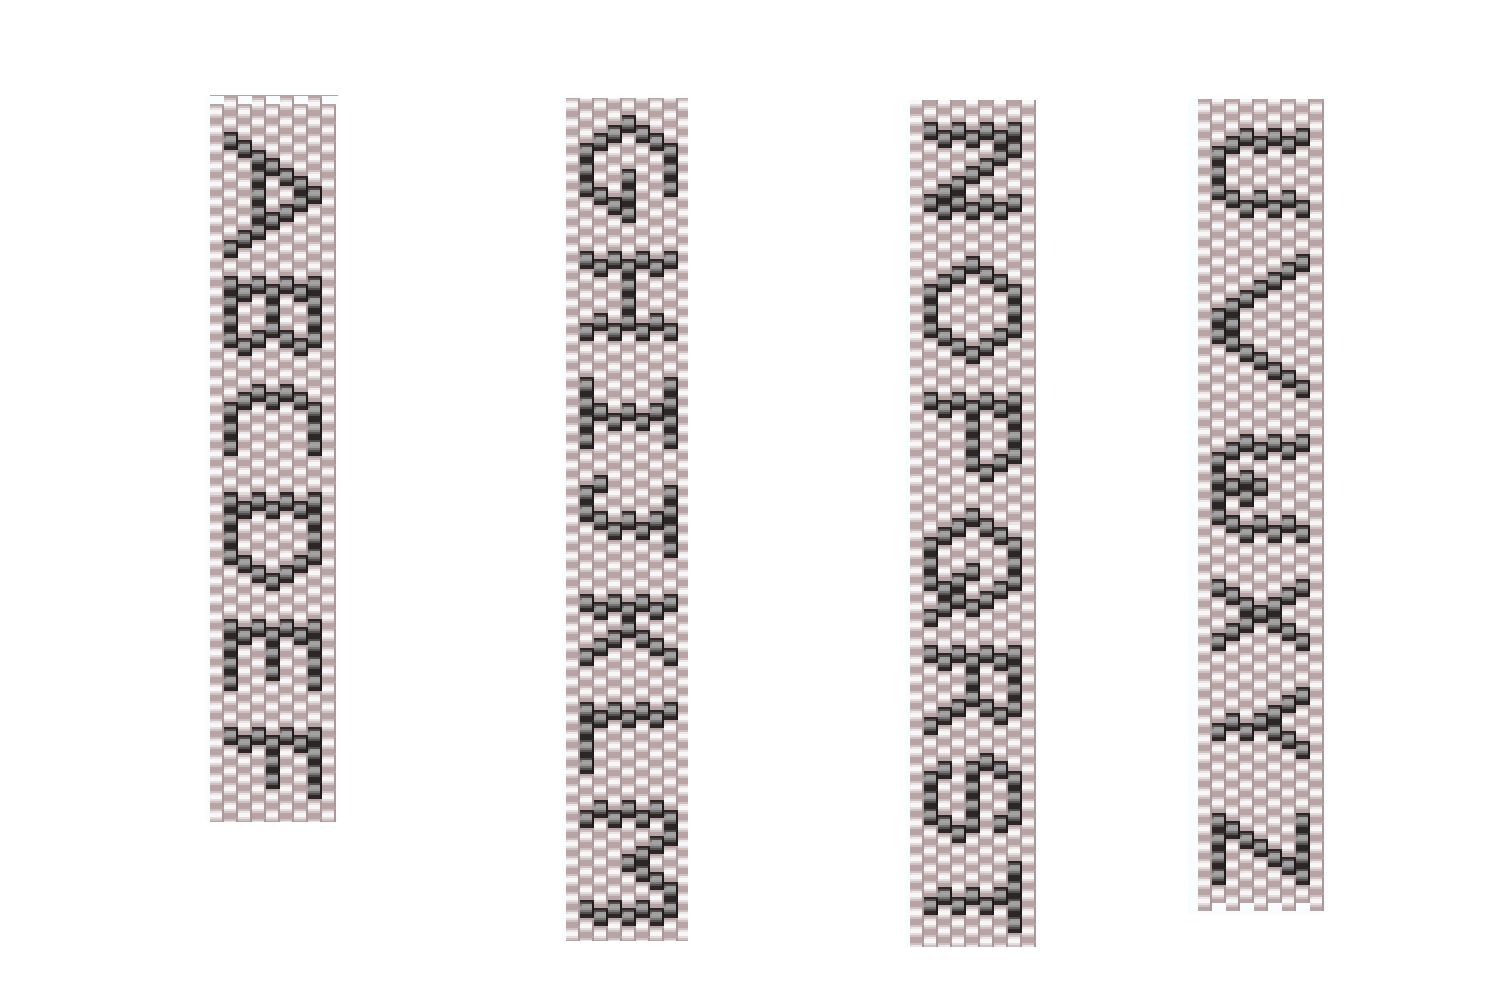 Мозаичное плетение бисером для начинающих ◈ способы и схемы ◈